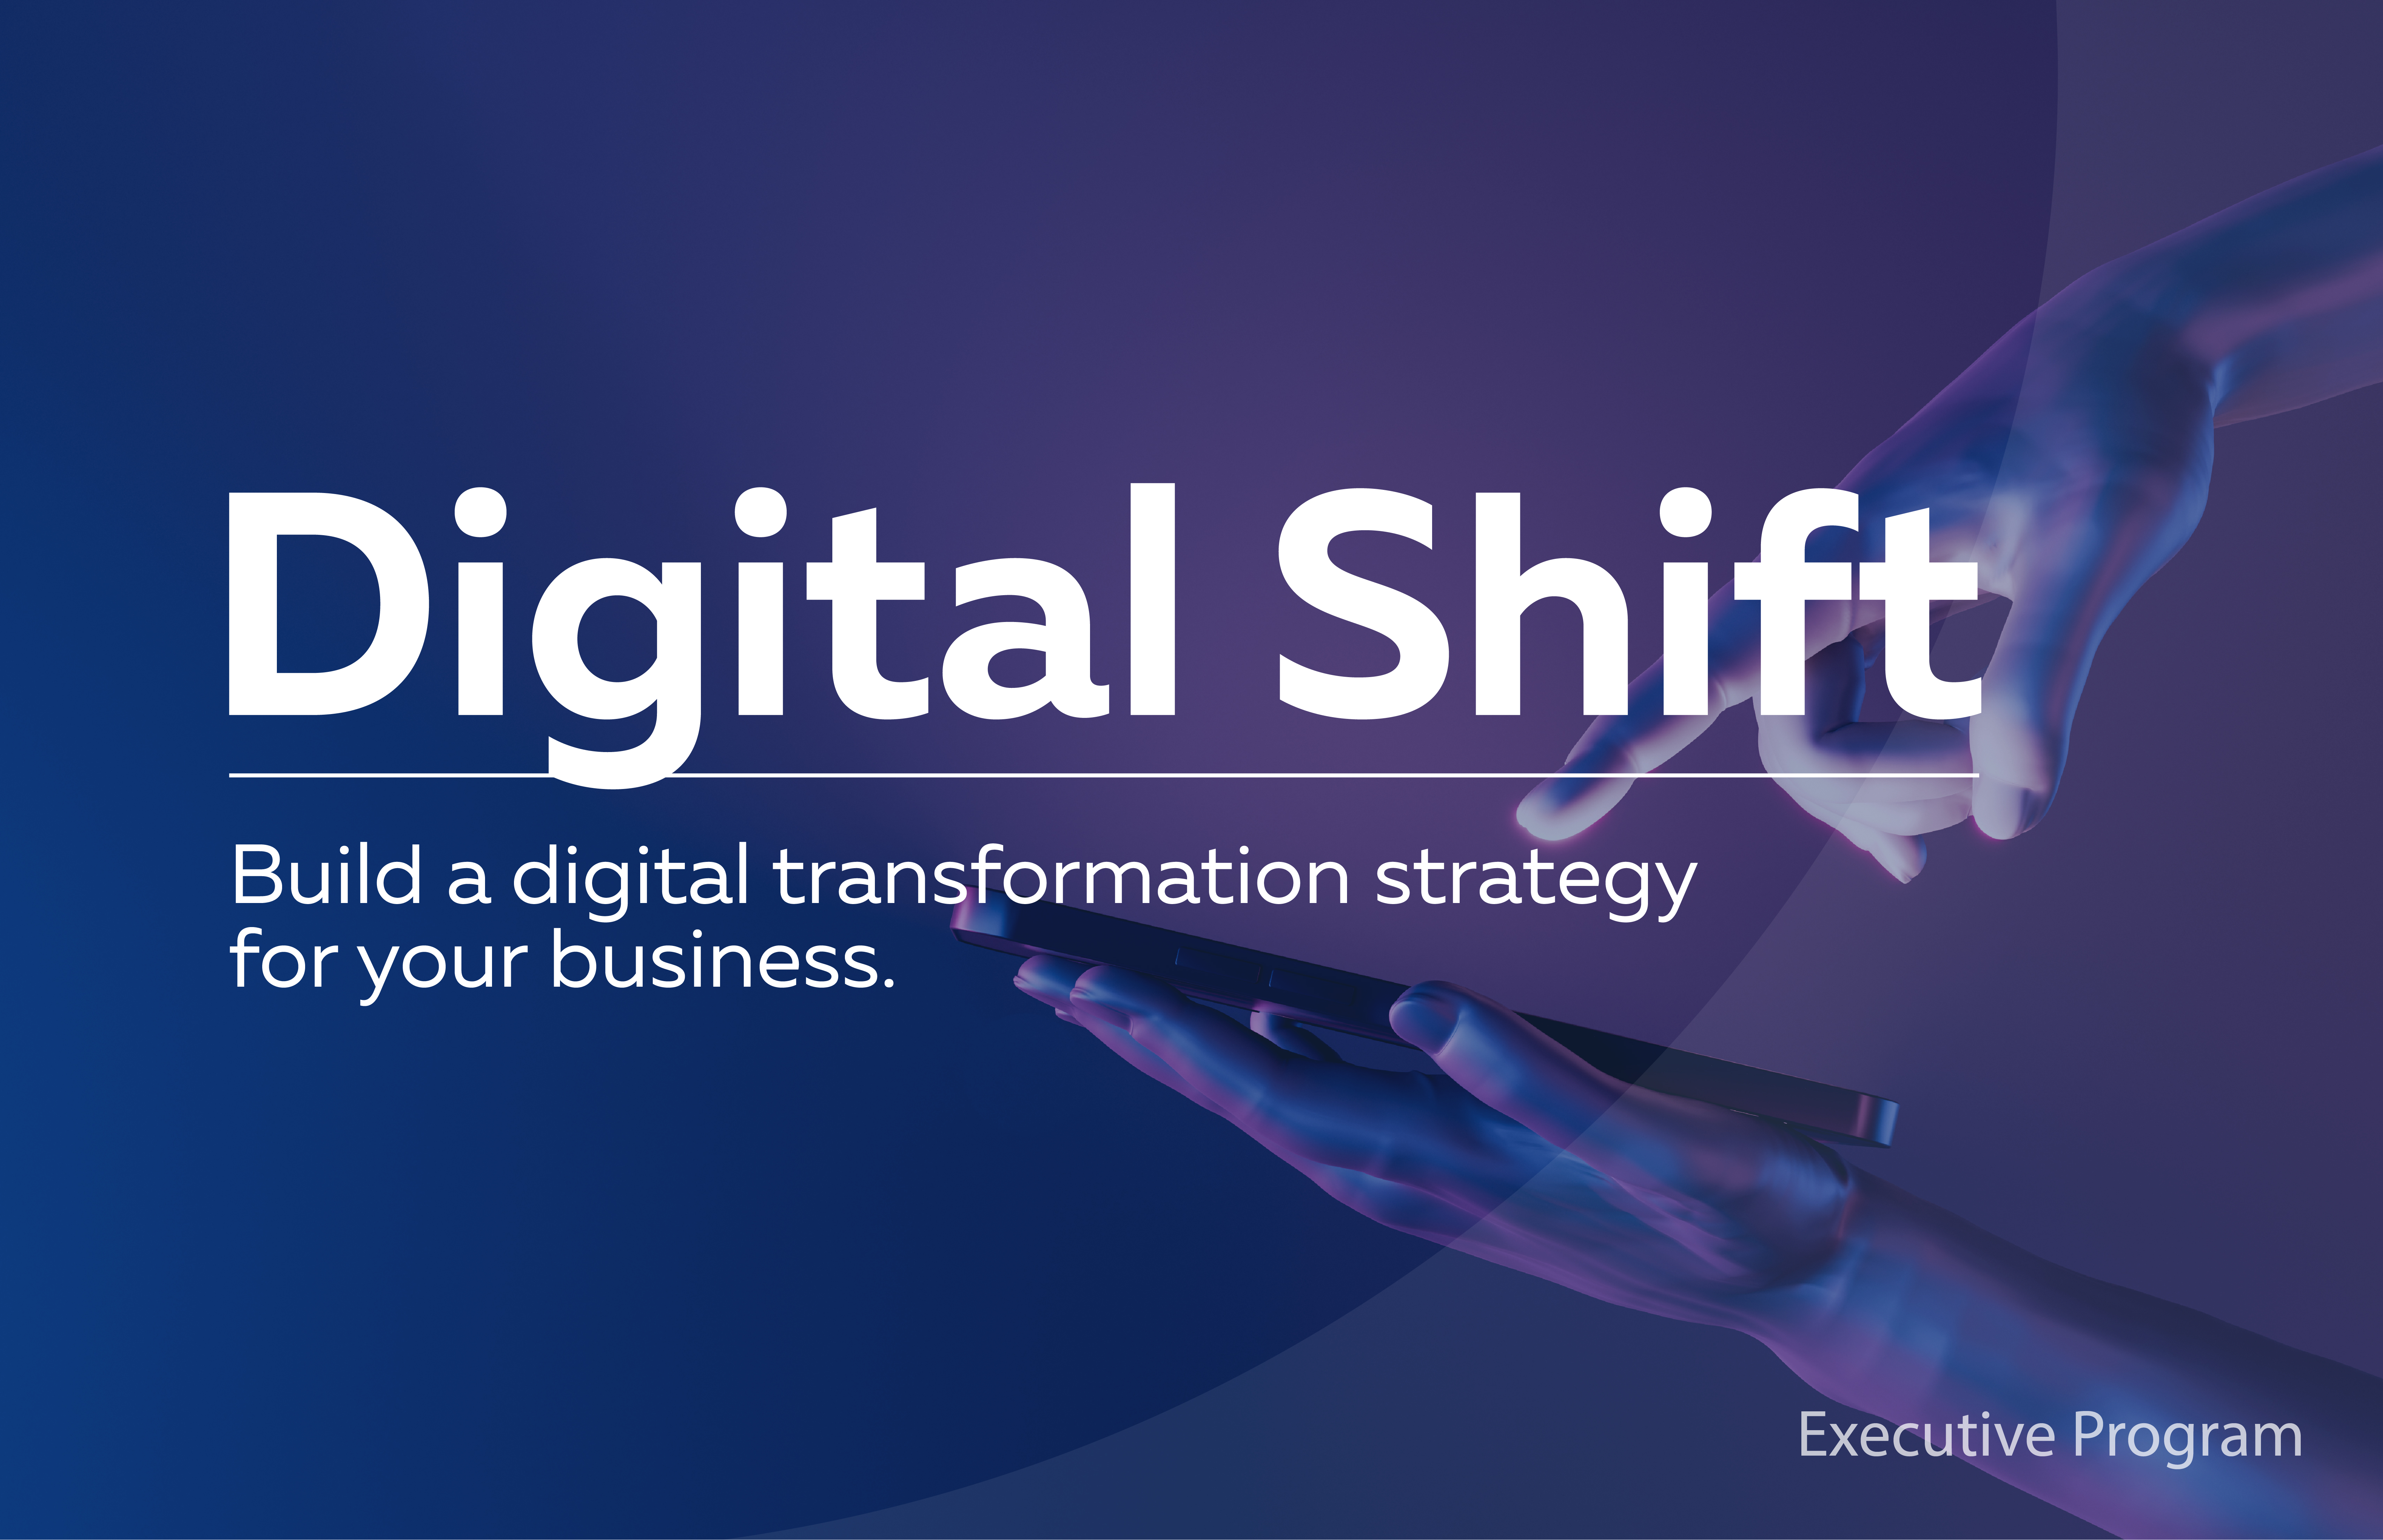 Digital Shift. ղեկավարների մասնագիտական զարգացման ծրագիր